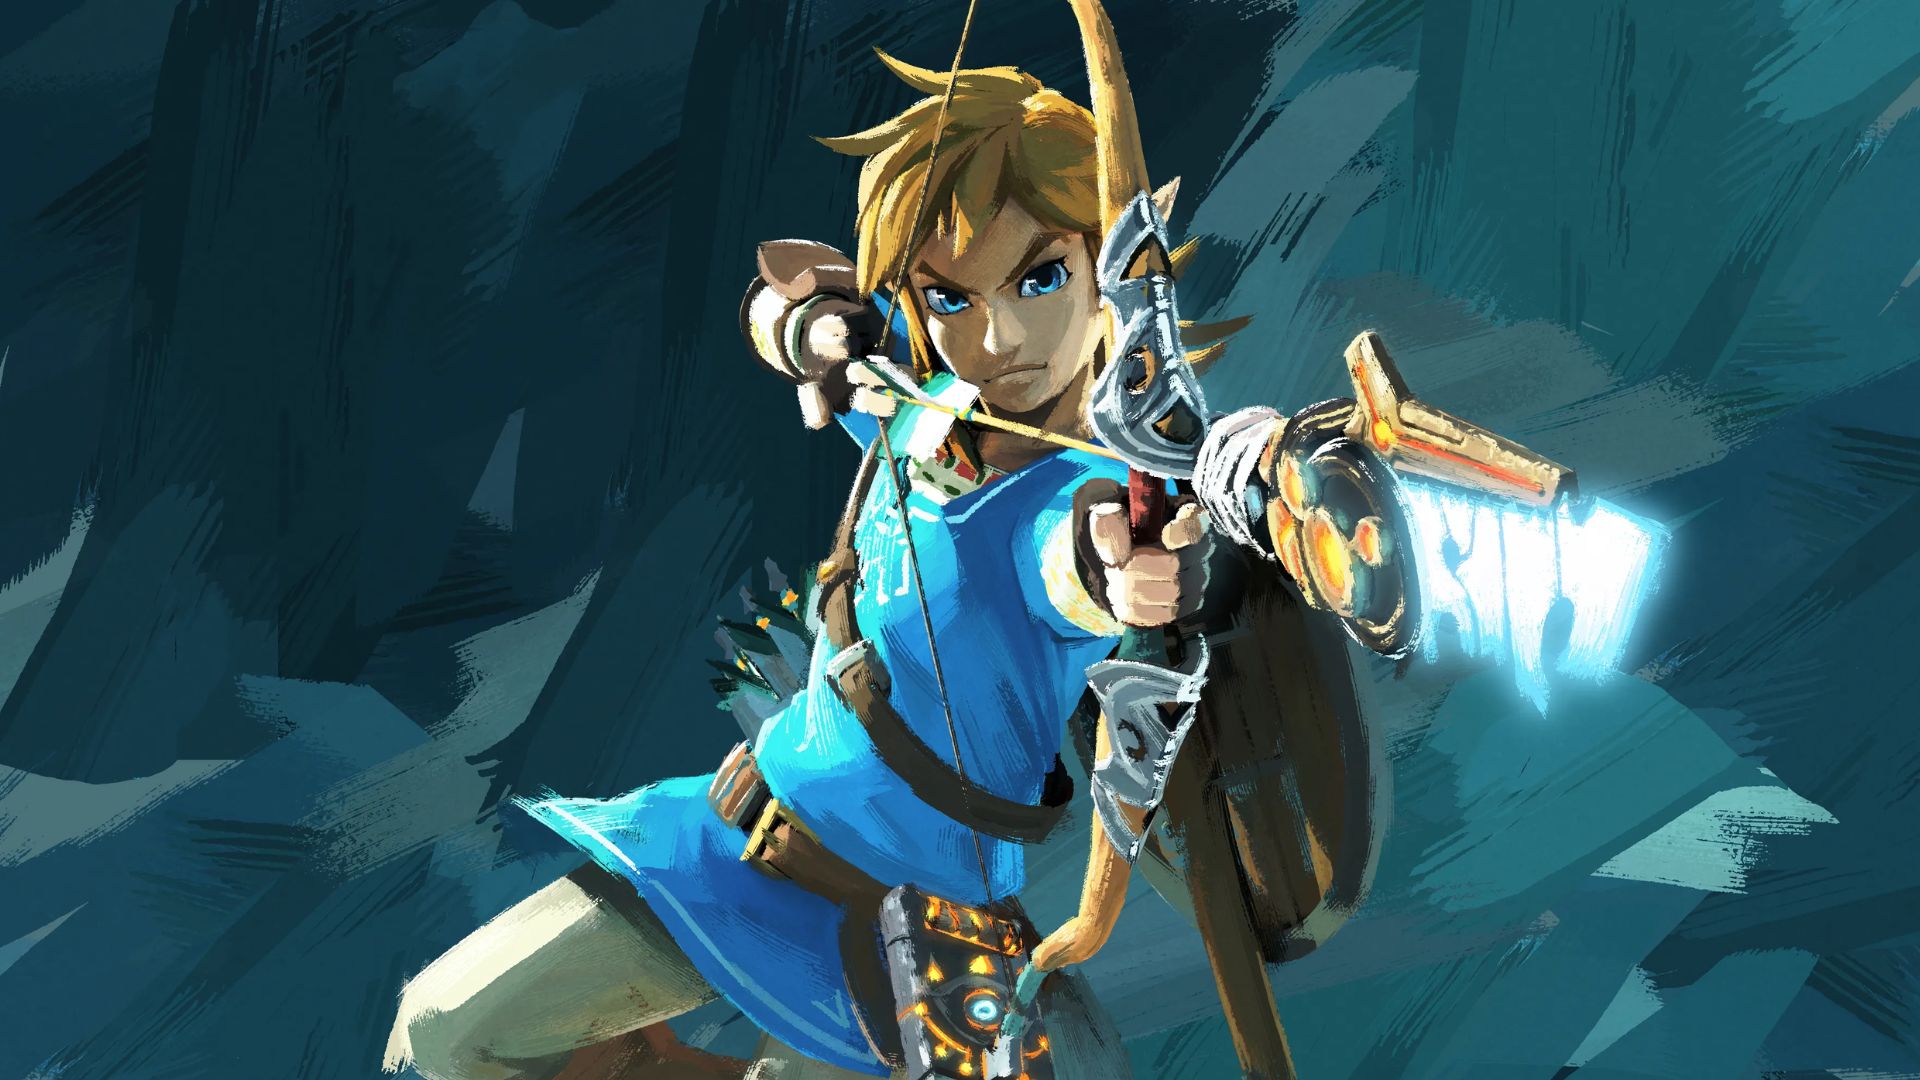 Link Protecting Zelda